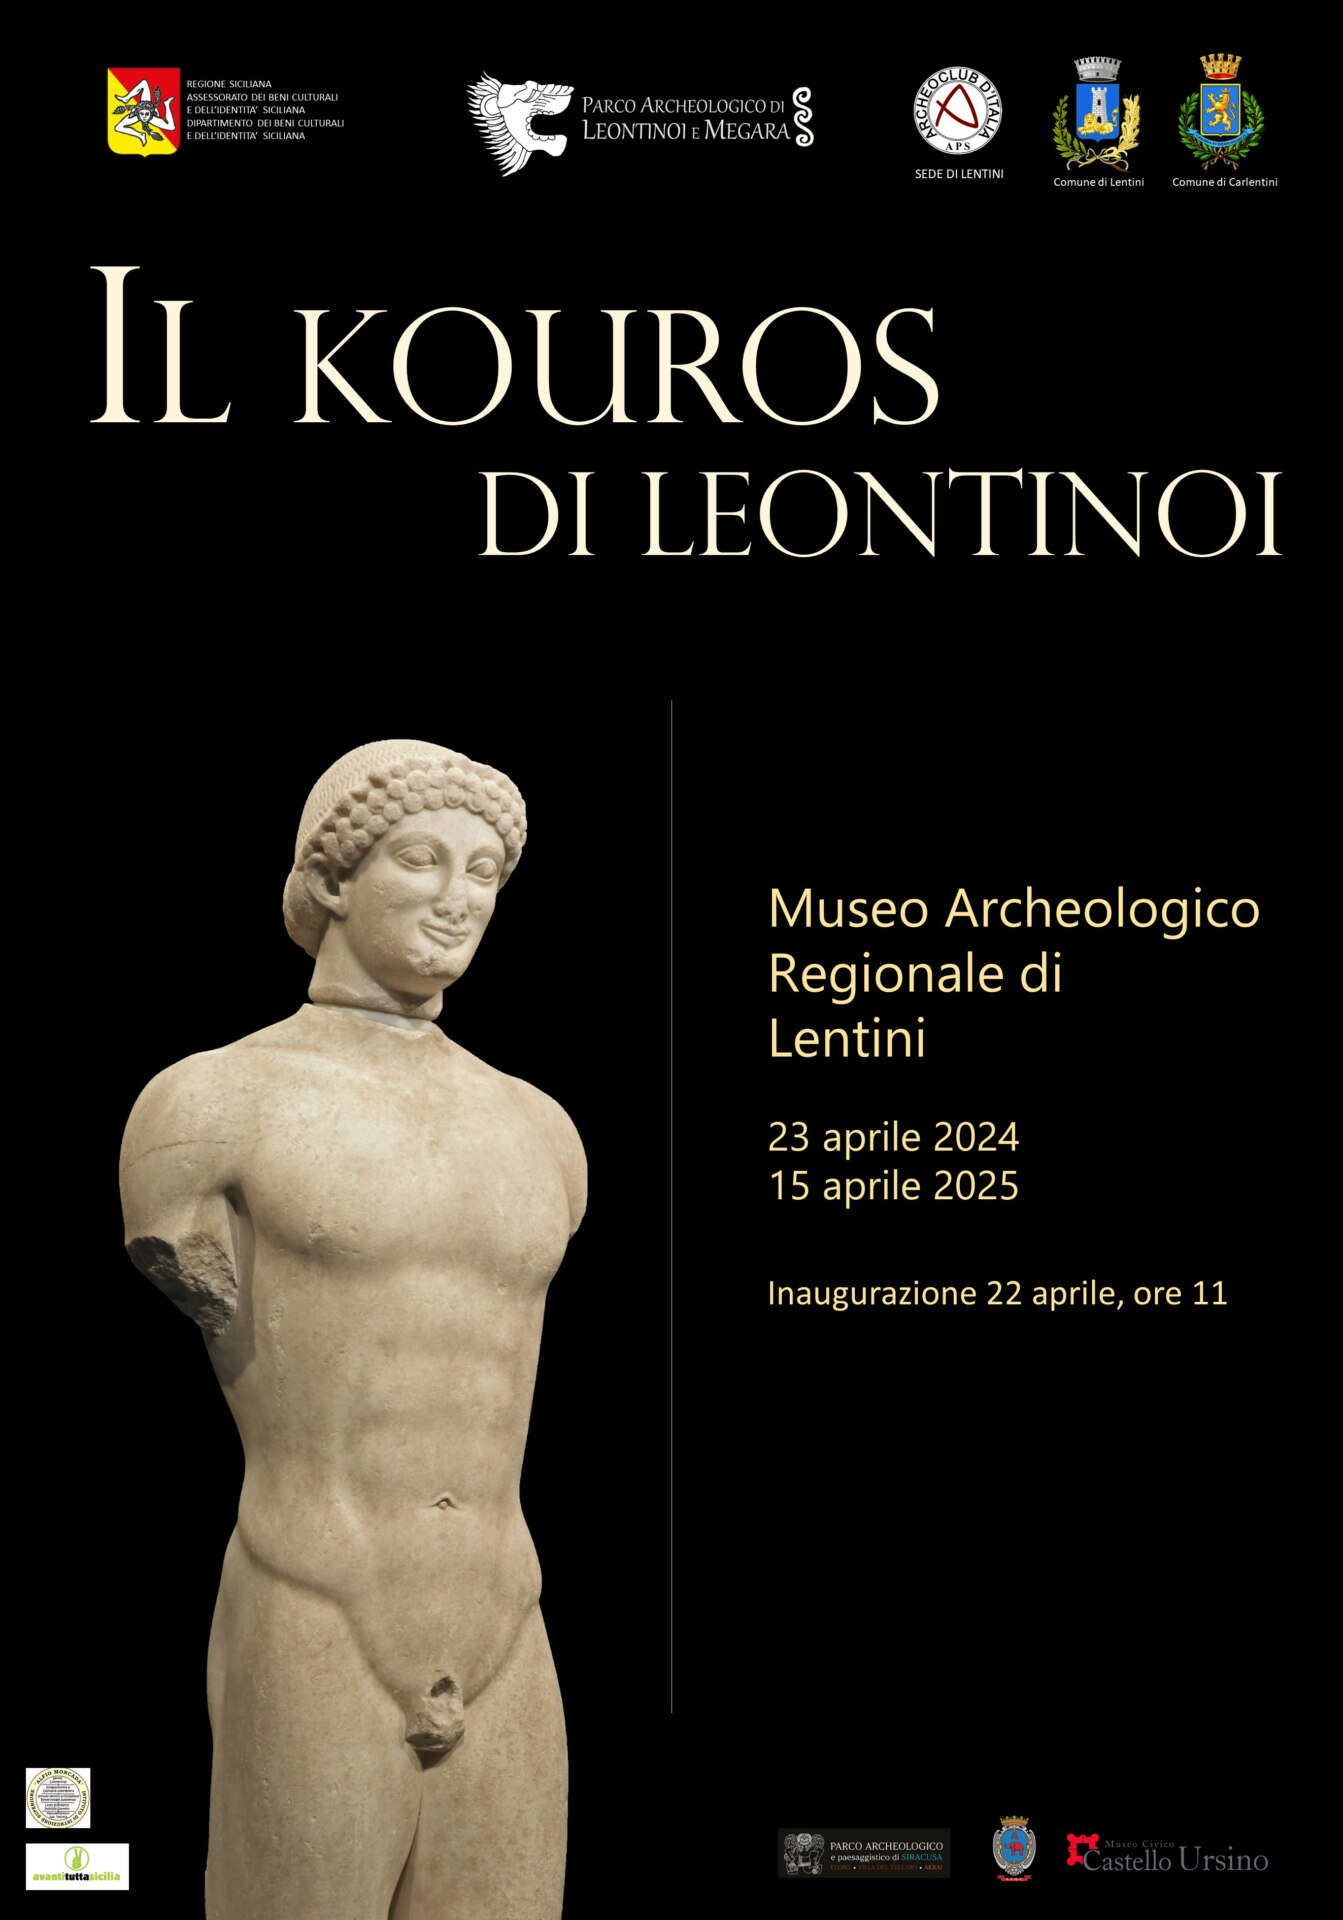 La Statua del Kouros sarà esposta nel museo archeologico di Lentini, il 22 aprile l’inaugurazione